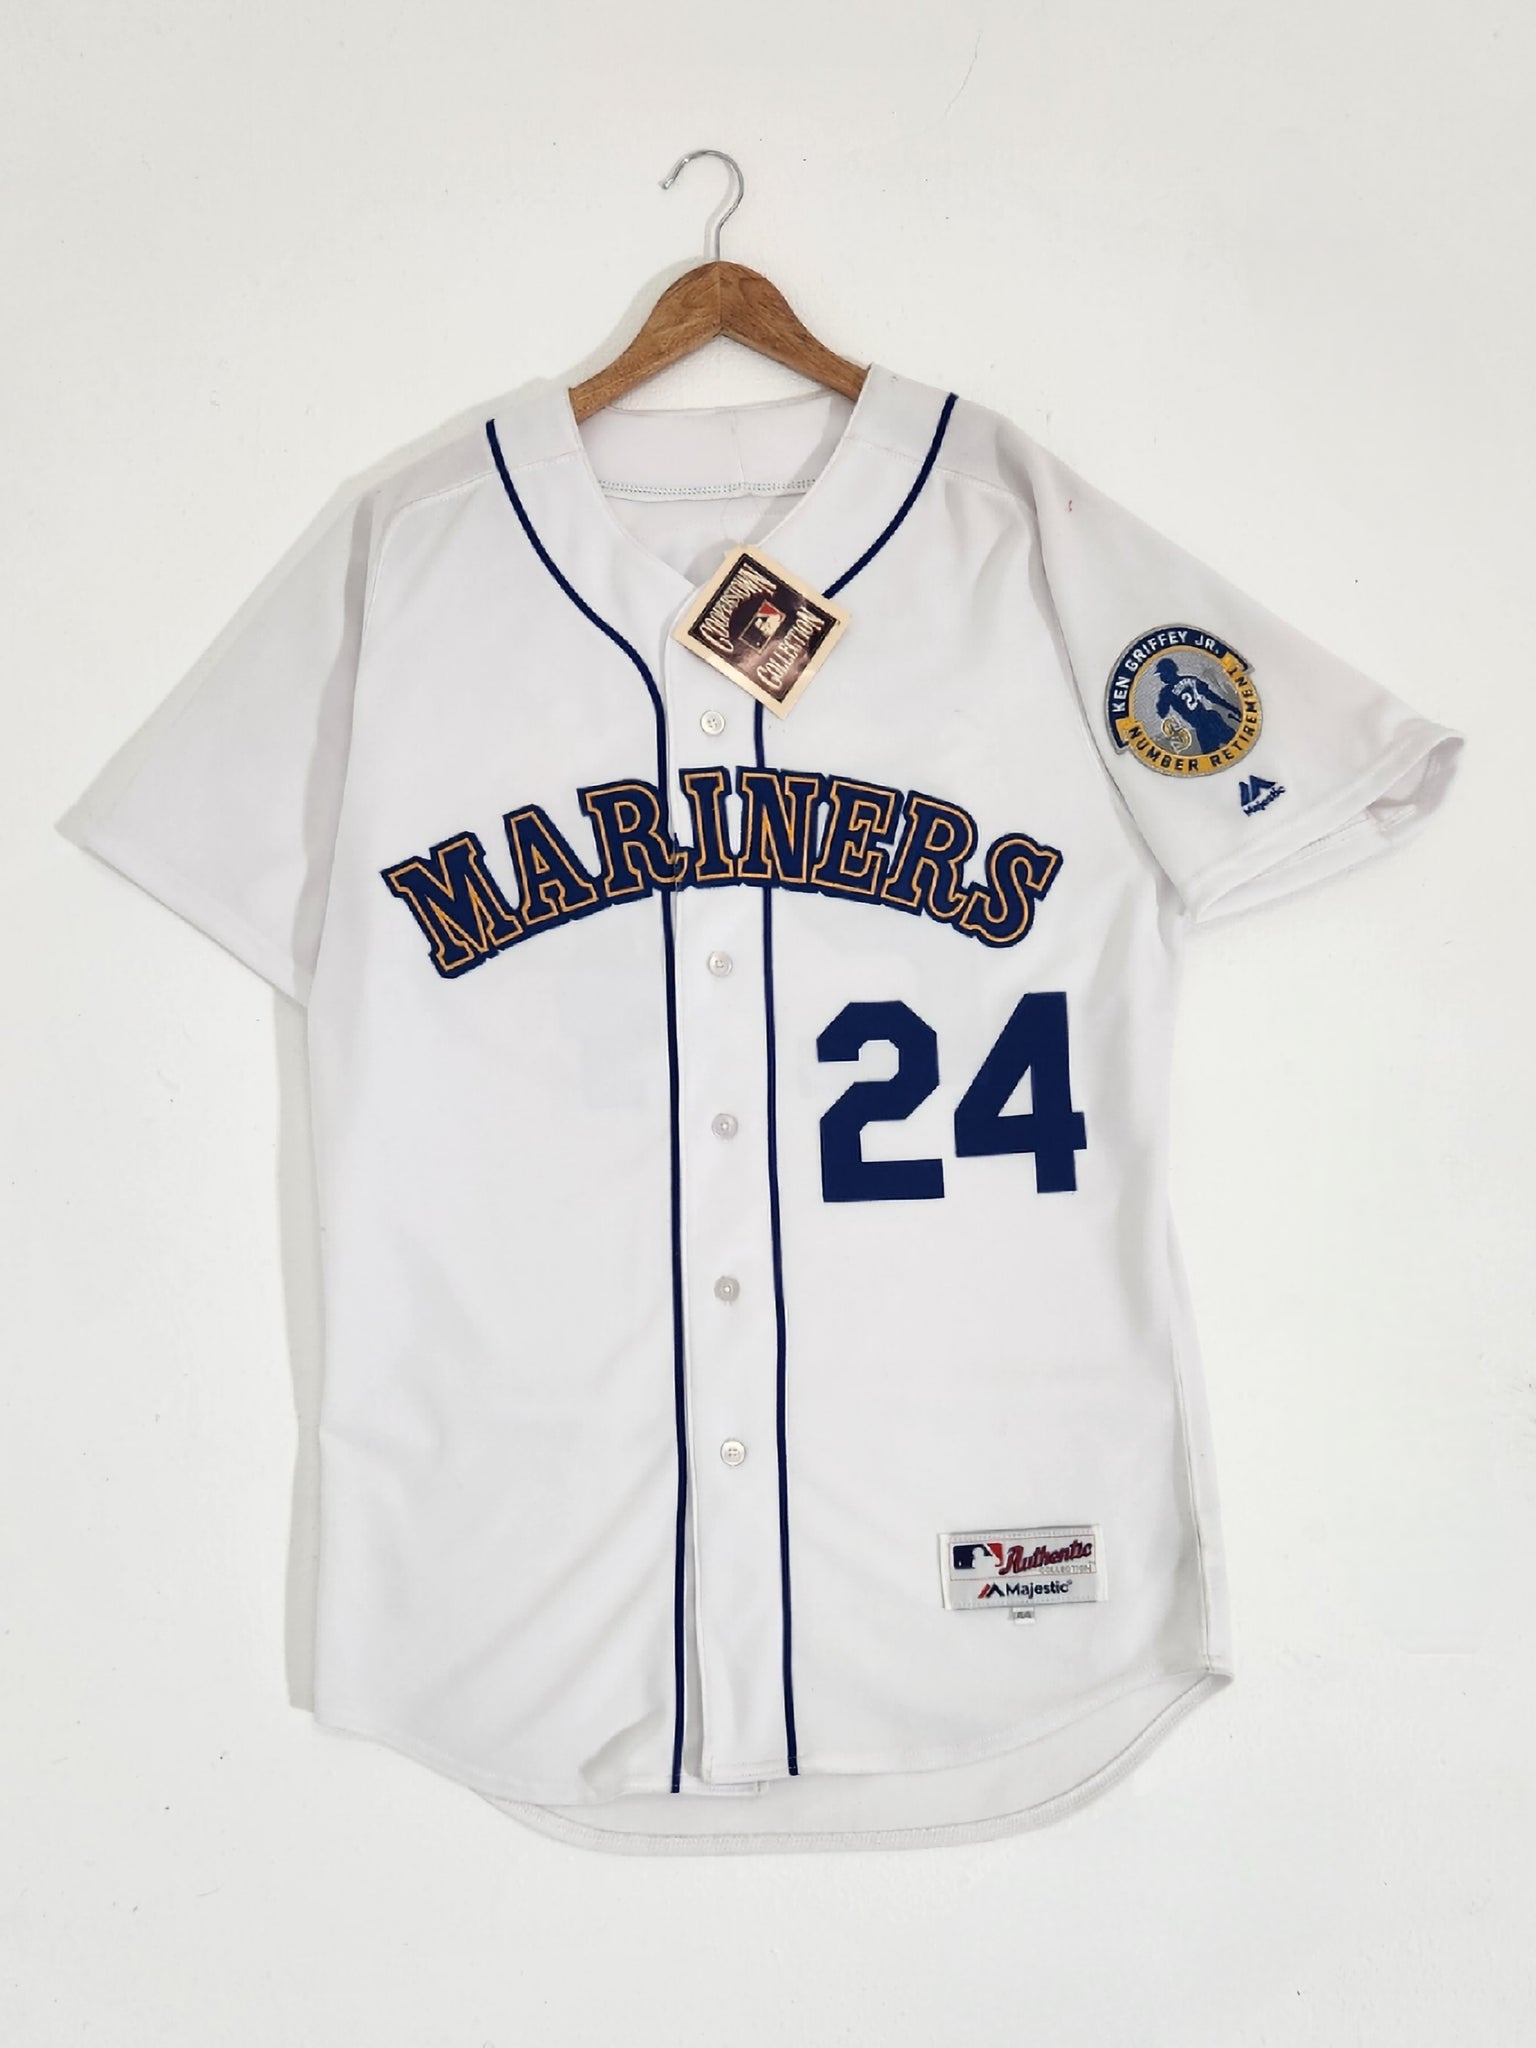 Mlb Seattle Mariners #24 Griffey Baseball Jersey